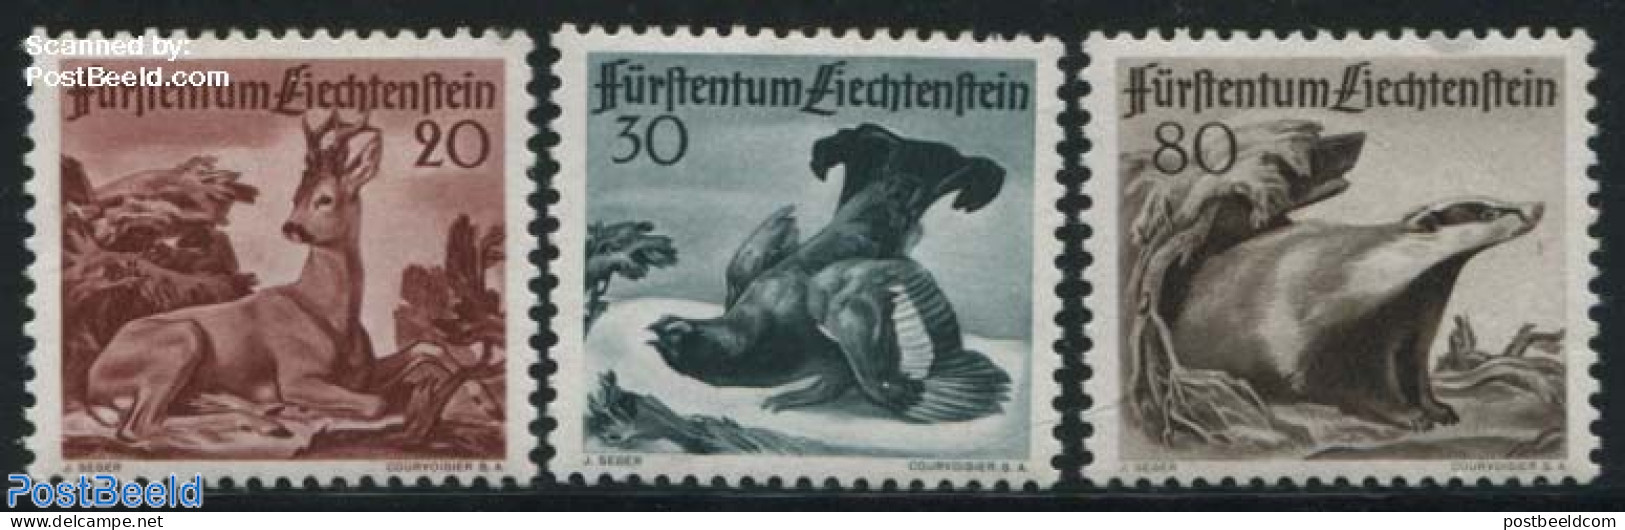 Liechtenstein 1950 Animals 3v, Mint NH, Nature - Animals (others & Mixed) - Birds - Deer - Poultry - Wild Mammals - Nuevos